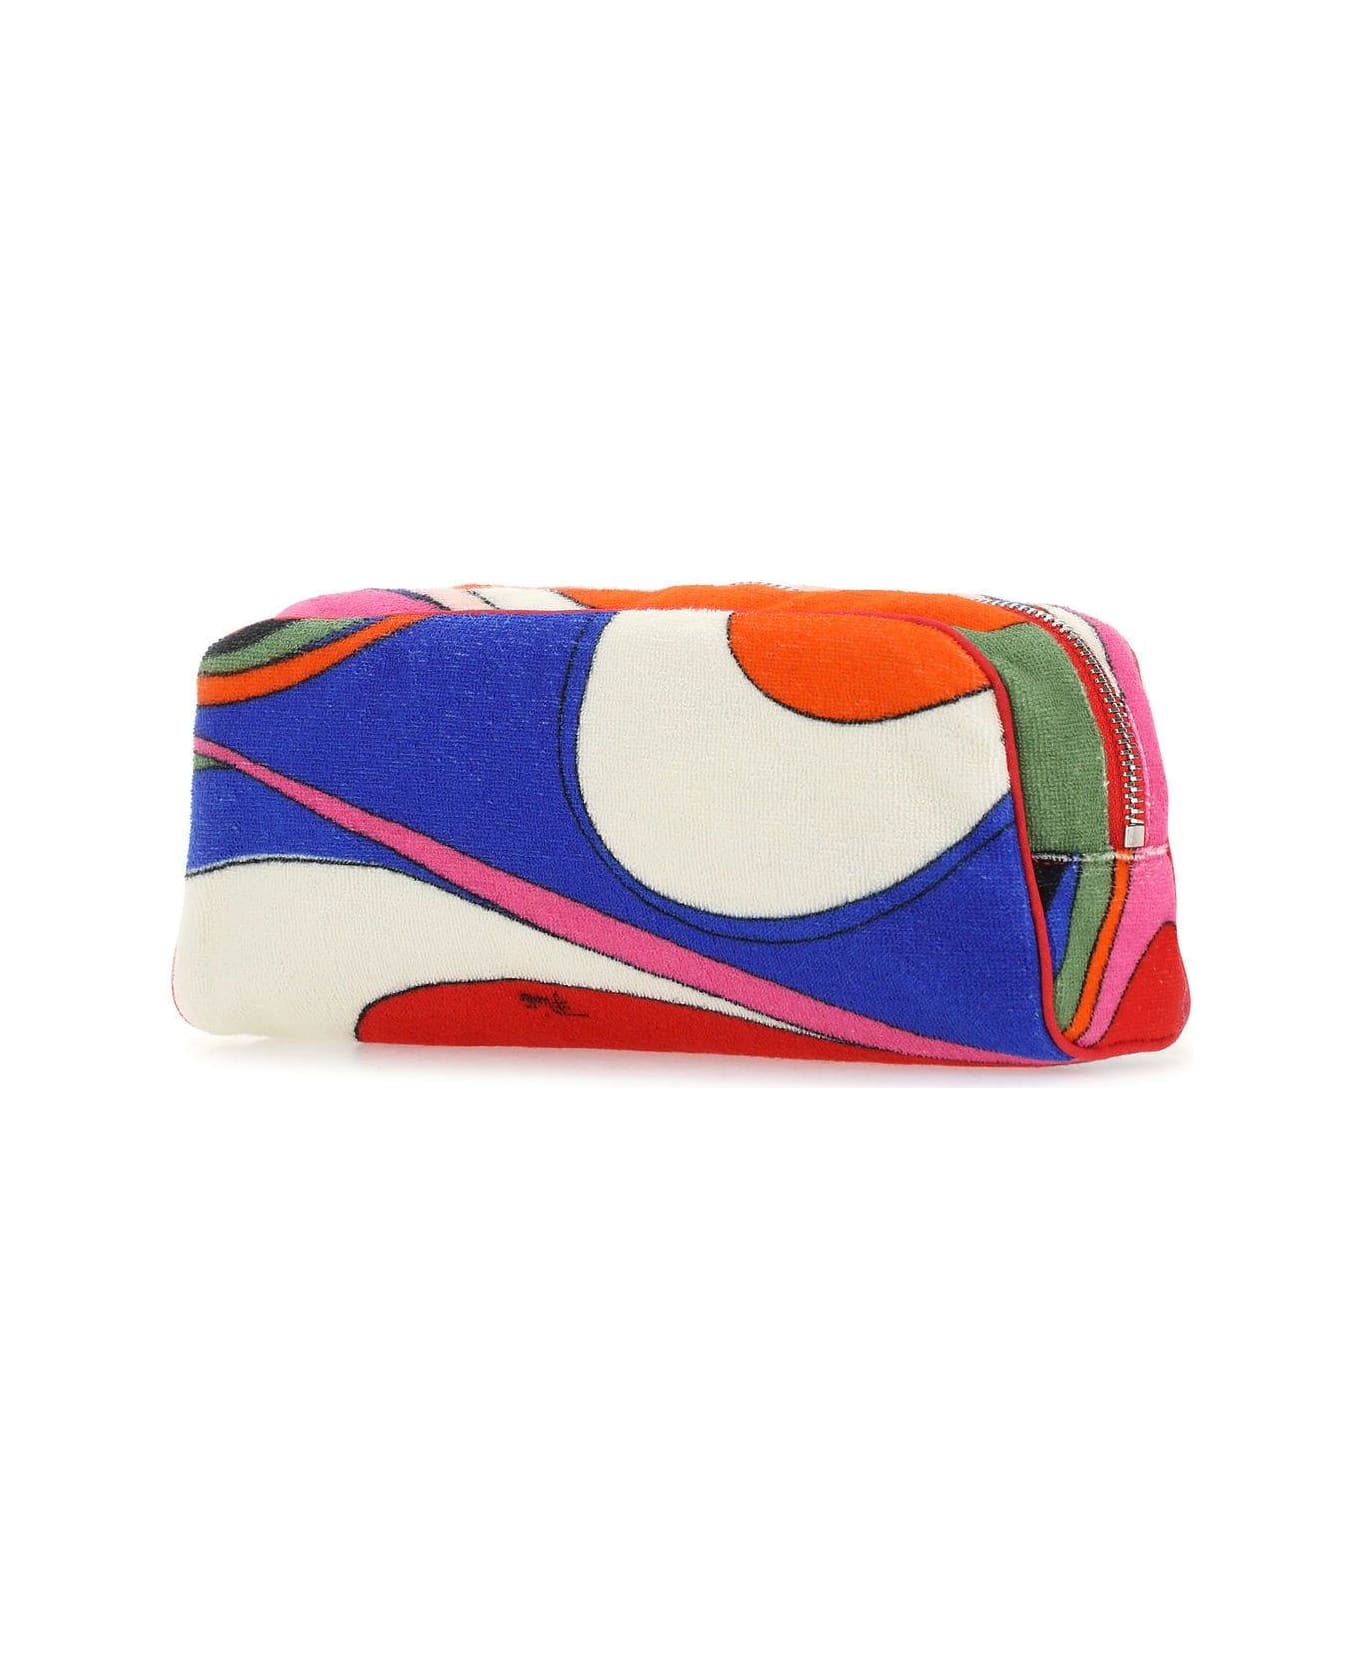 Pucci Multicolor Fabric Beauty Case - Multicolor クラッチバッグ